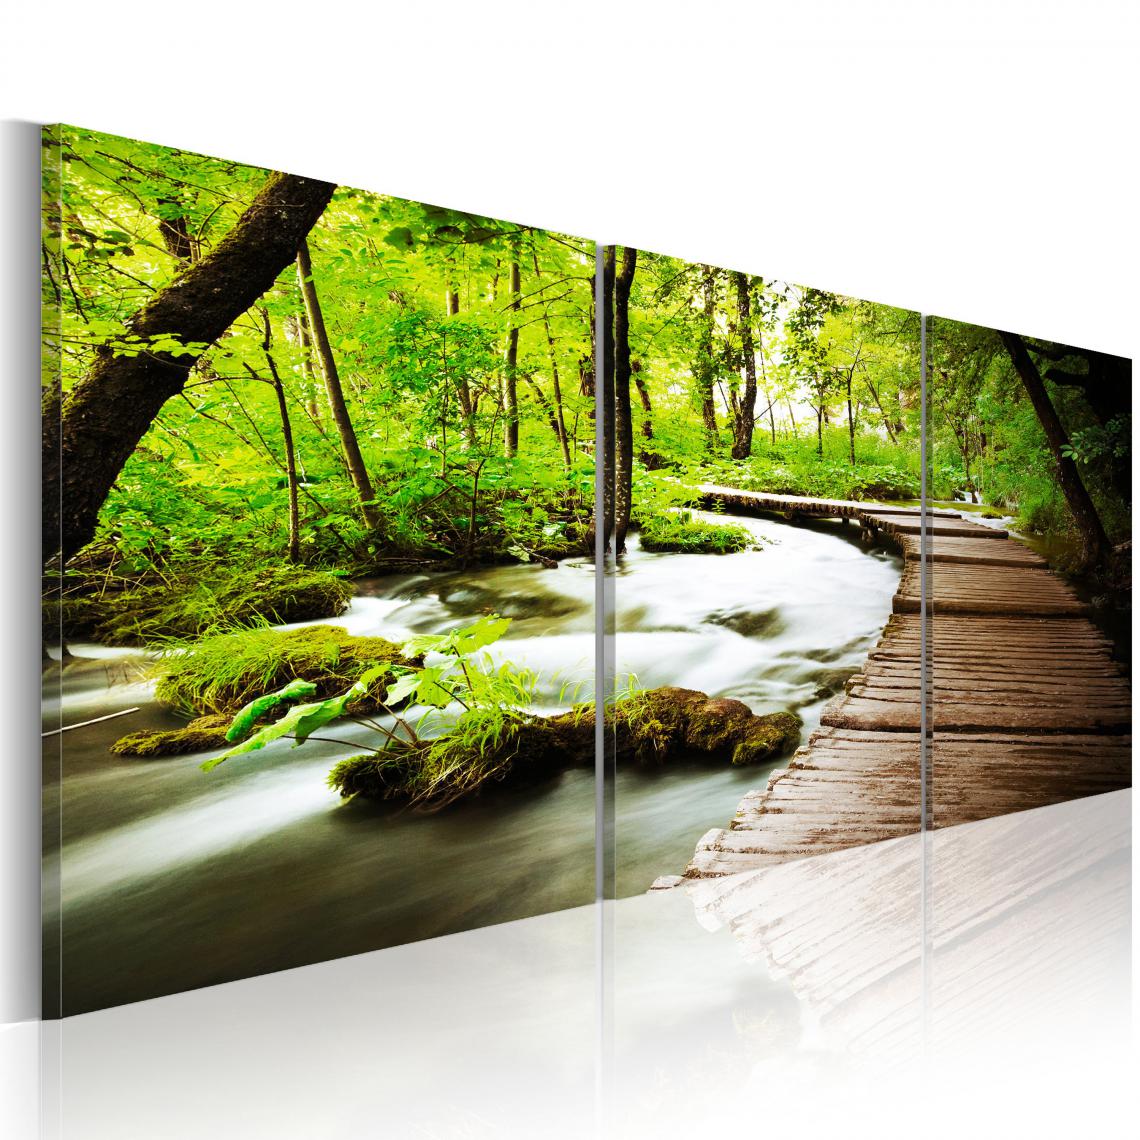 Decoshop26 - Tableau sur toile en 3 panneaux décoration murale image imprimée cadre en bois à suspendre Ruisseau forestier 150x50 cm 11_0006174 - Tableaux, peintures